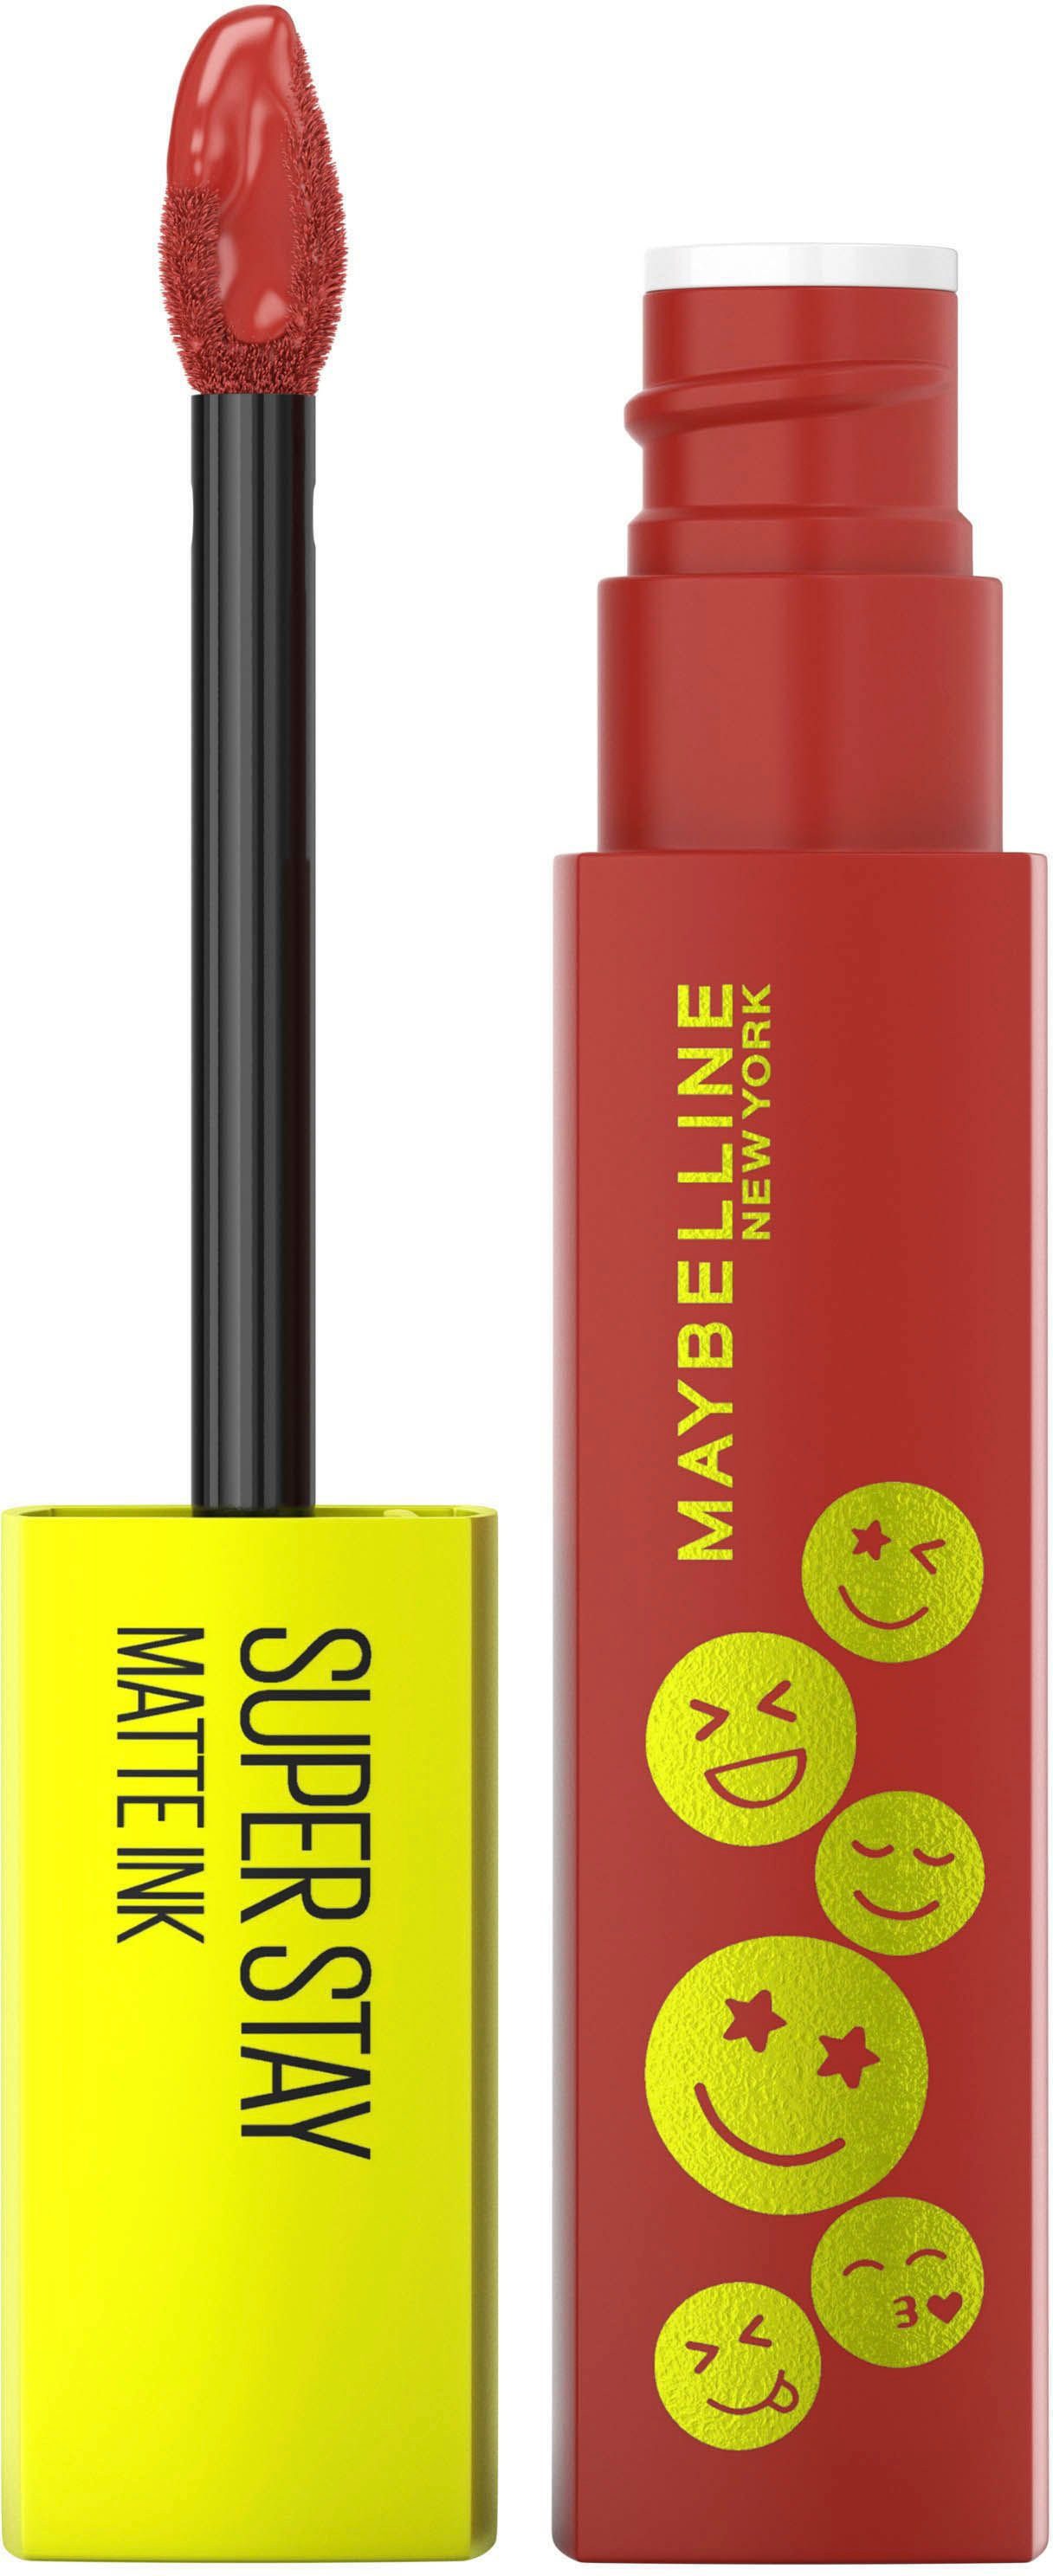 York Lippenstift Super Matte MAYBELLINE Ink YORK NEW Maybelline Lippenstift New Stay